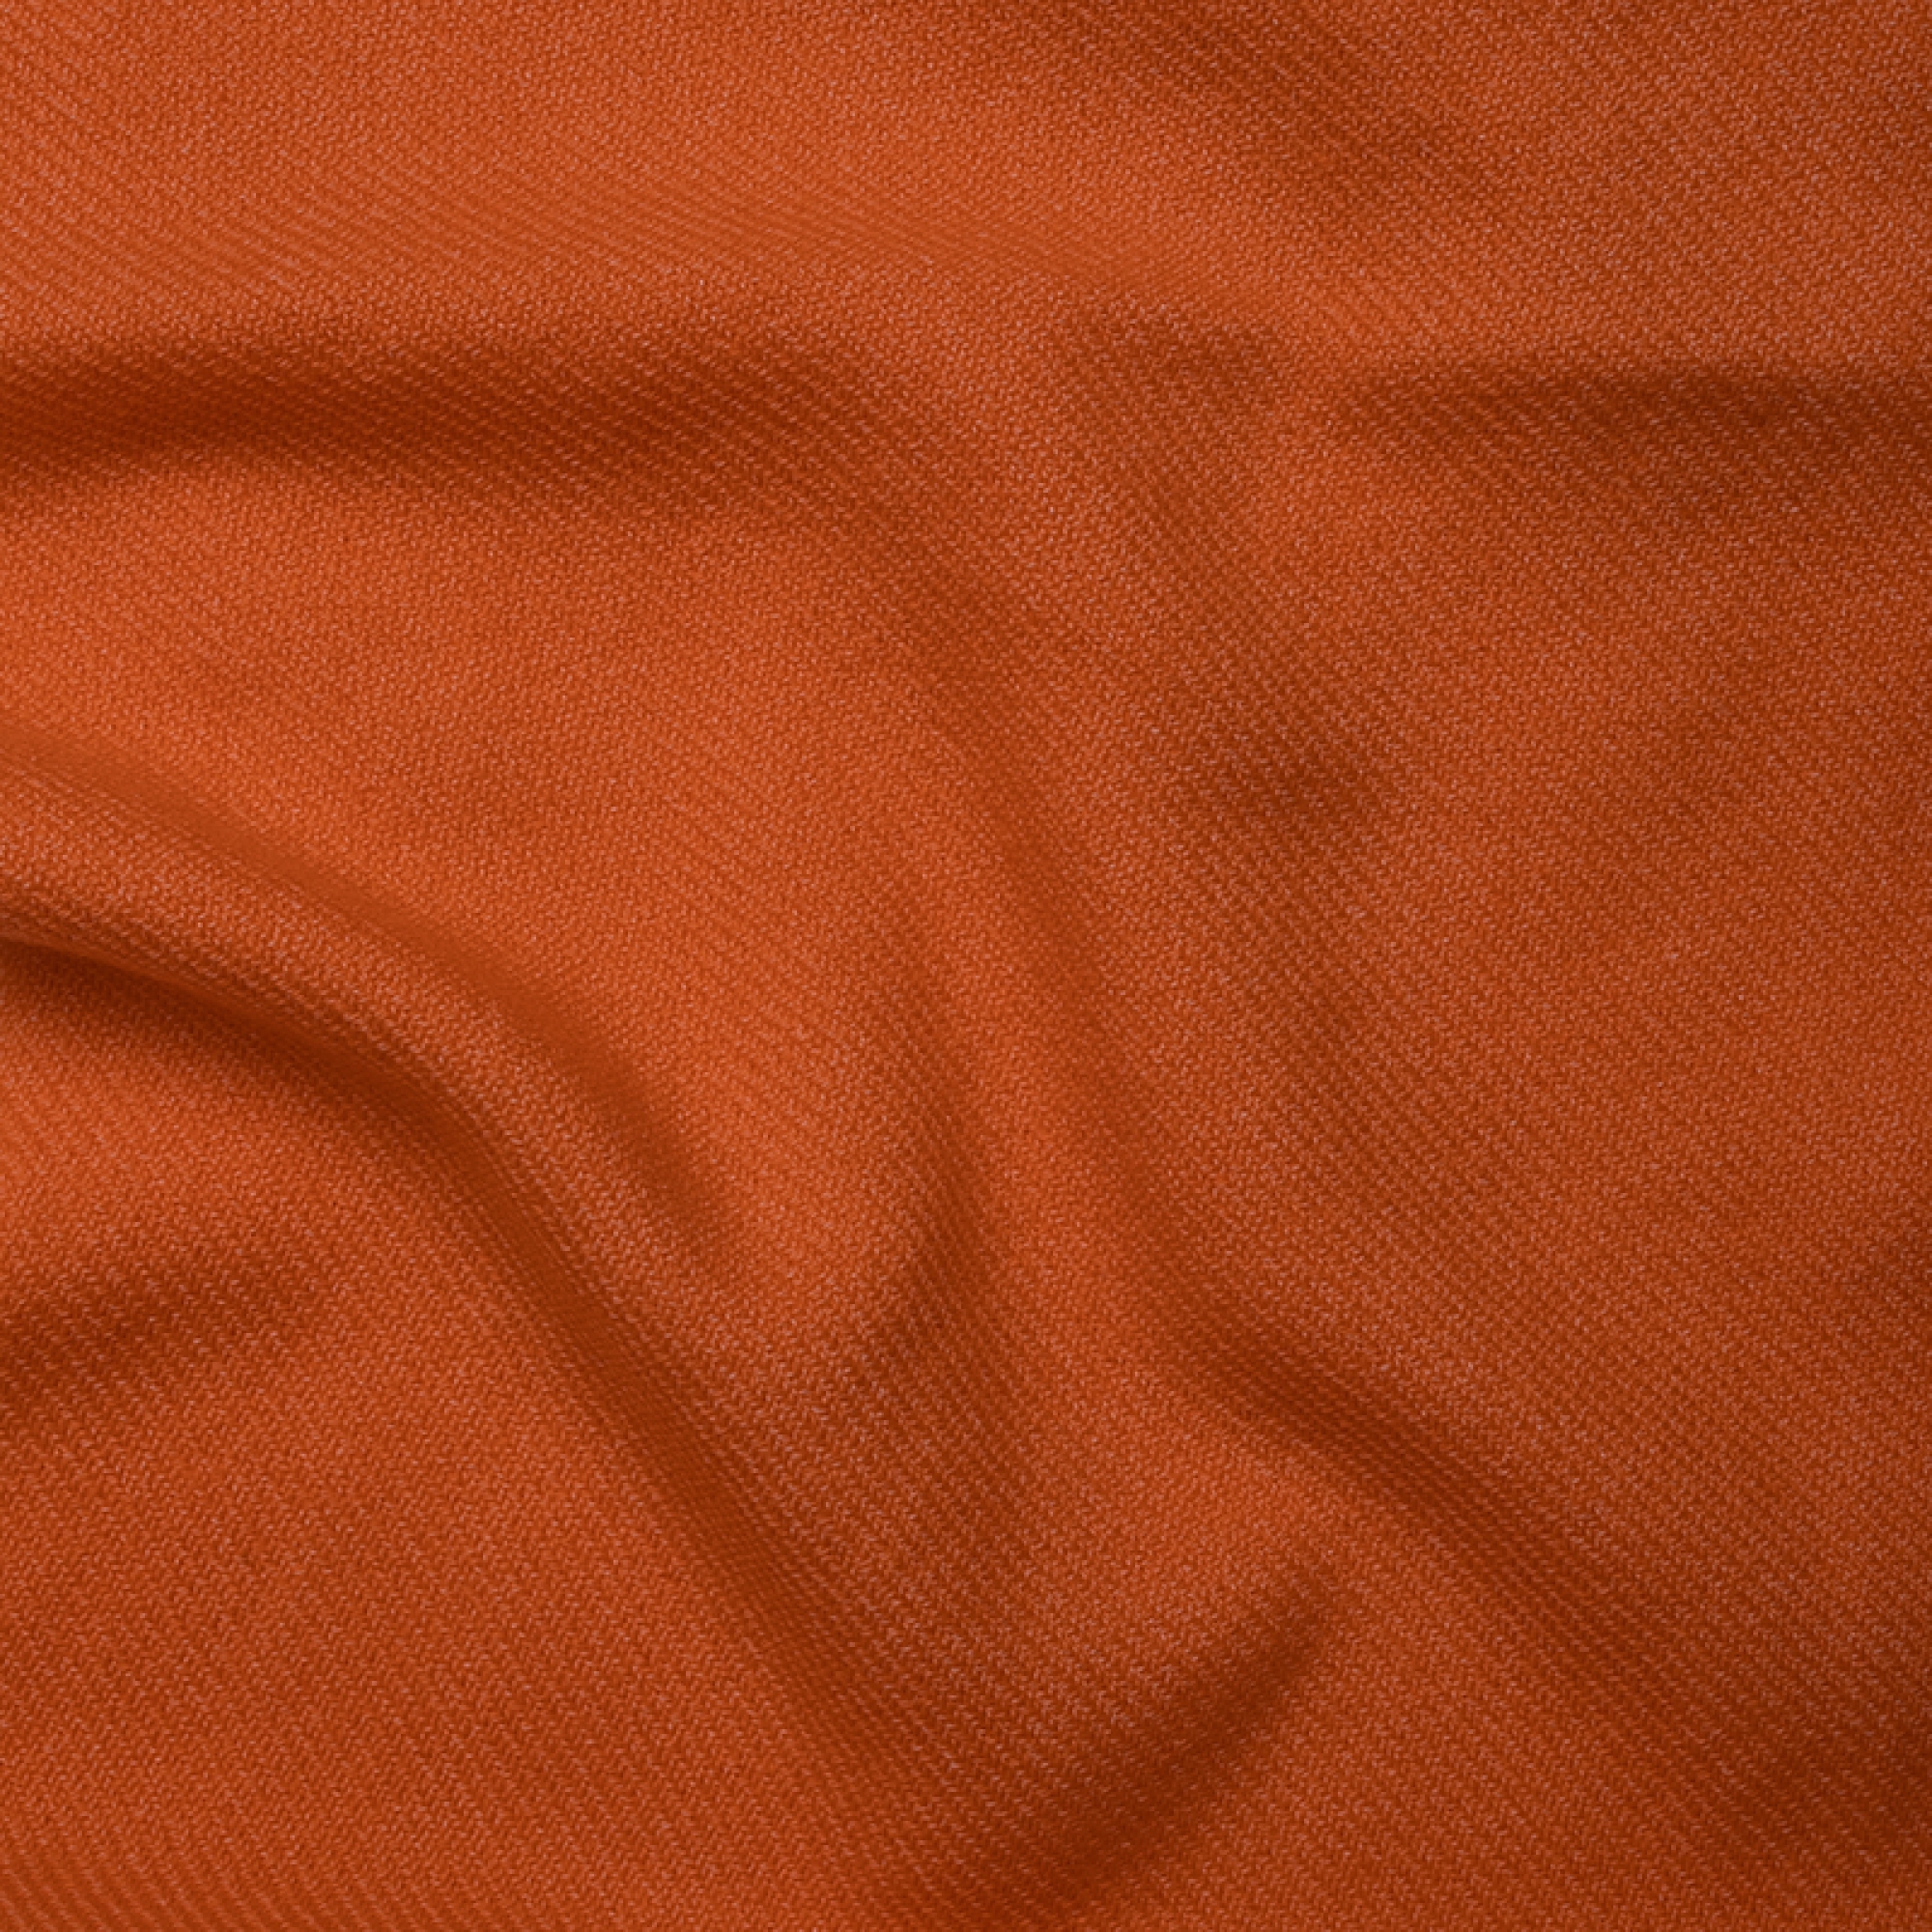 Cachemire accessoires couvertures plaids toodoo plain s 140 x 200 orange 140 x 200 cm